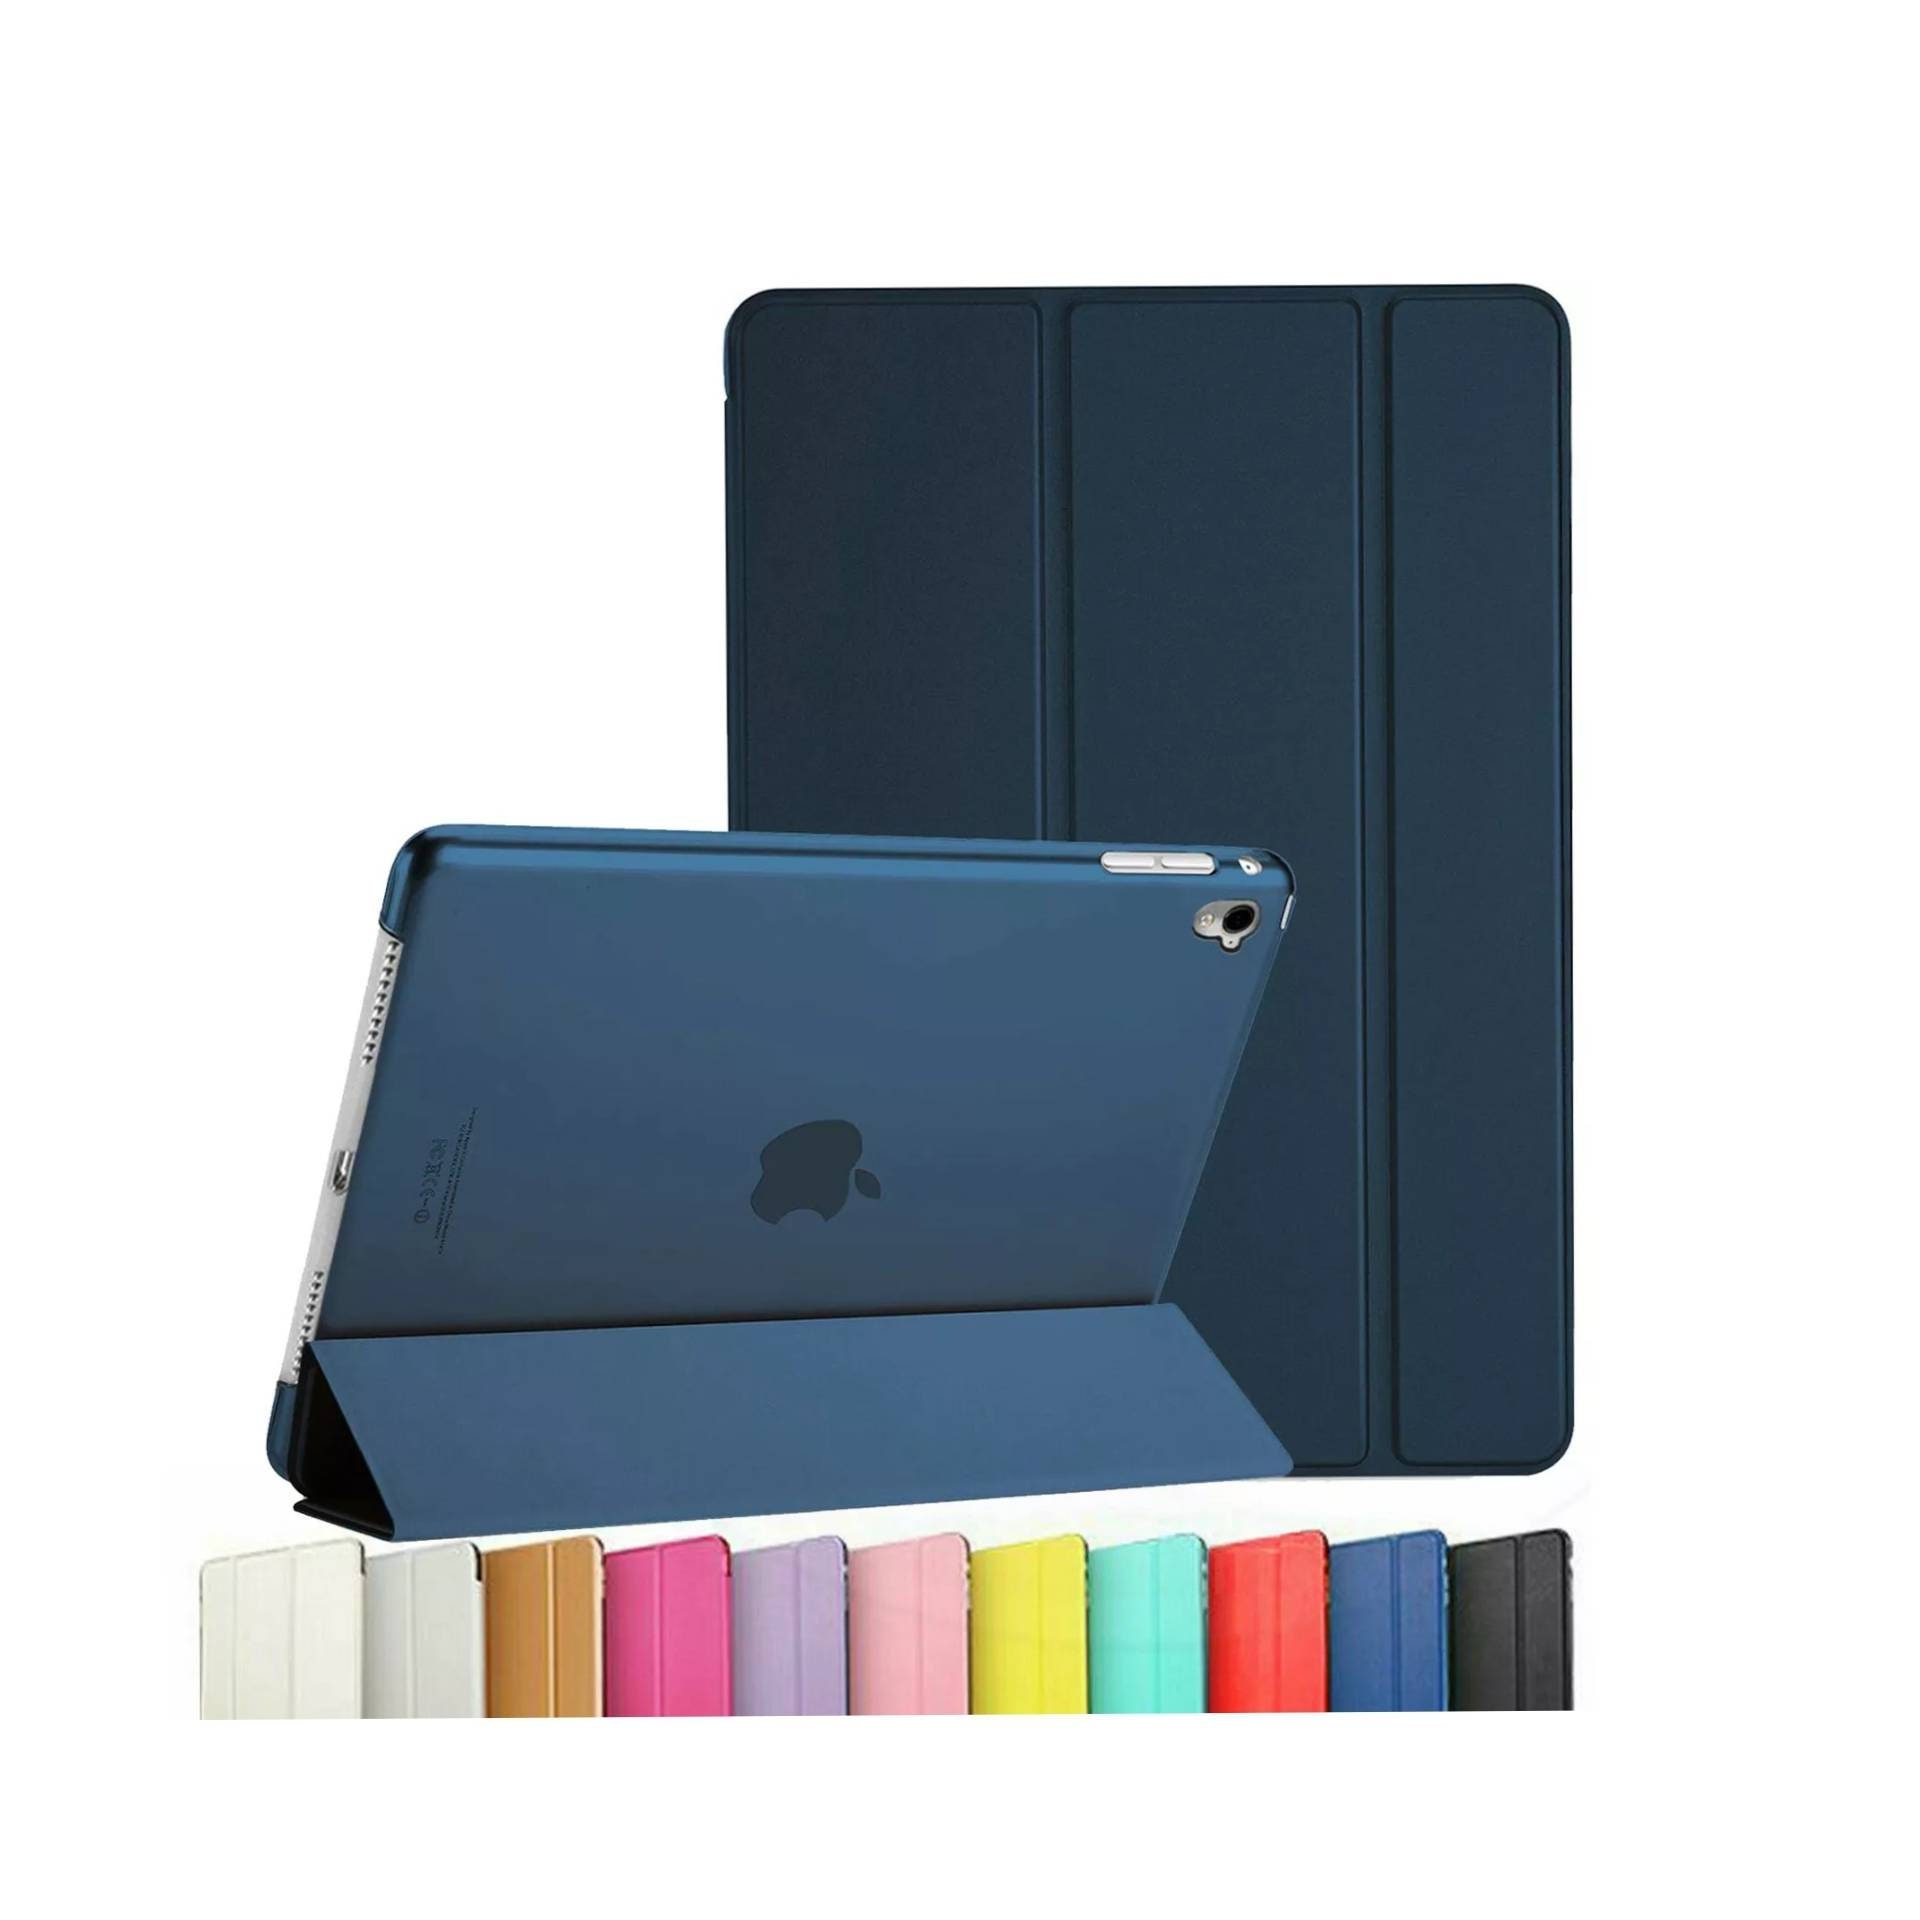 irina shop専用iPad (第 3 世代)